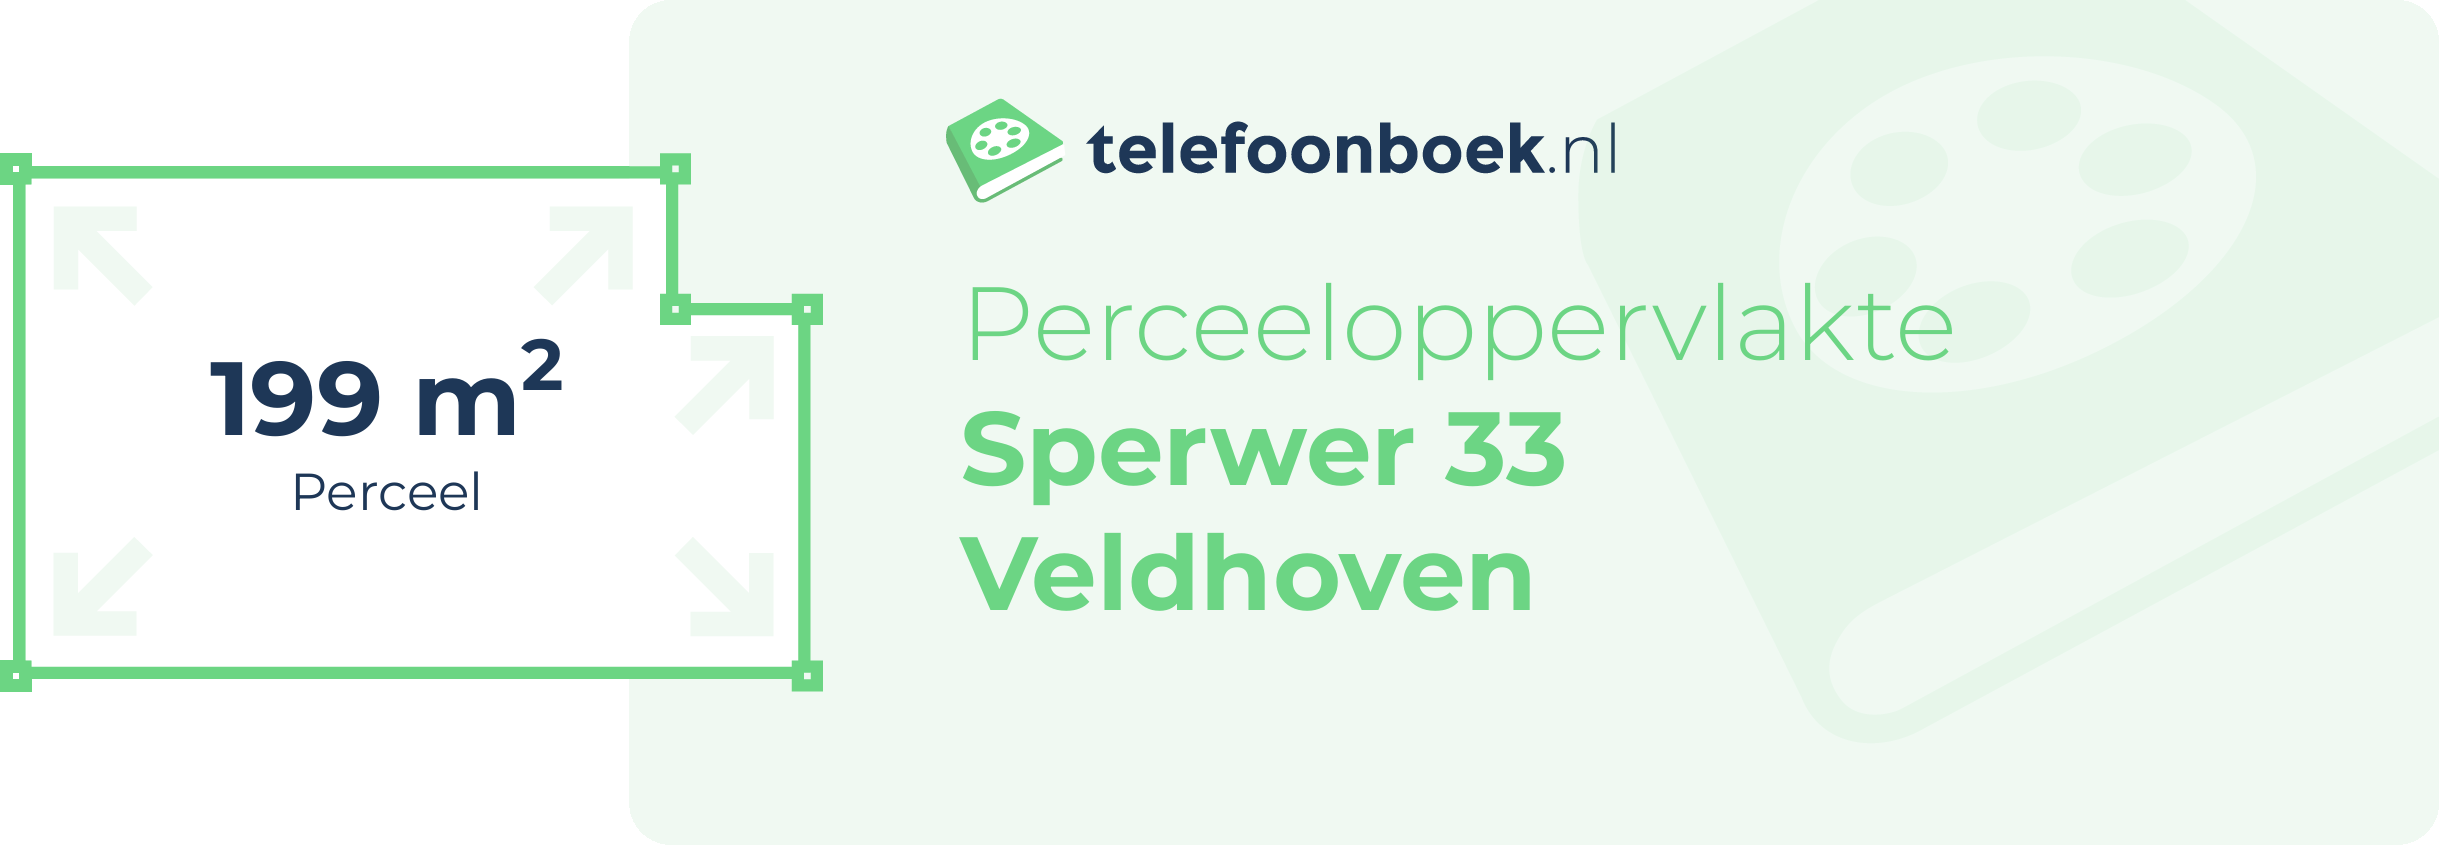 Perceeloppervlakte Sperwer 33 Veldhoven